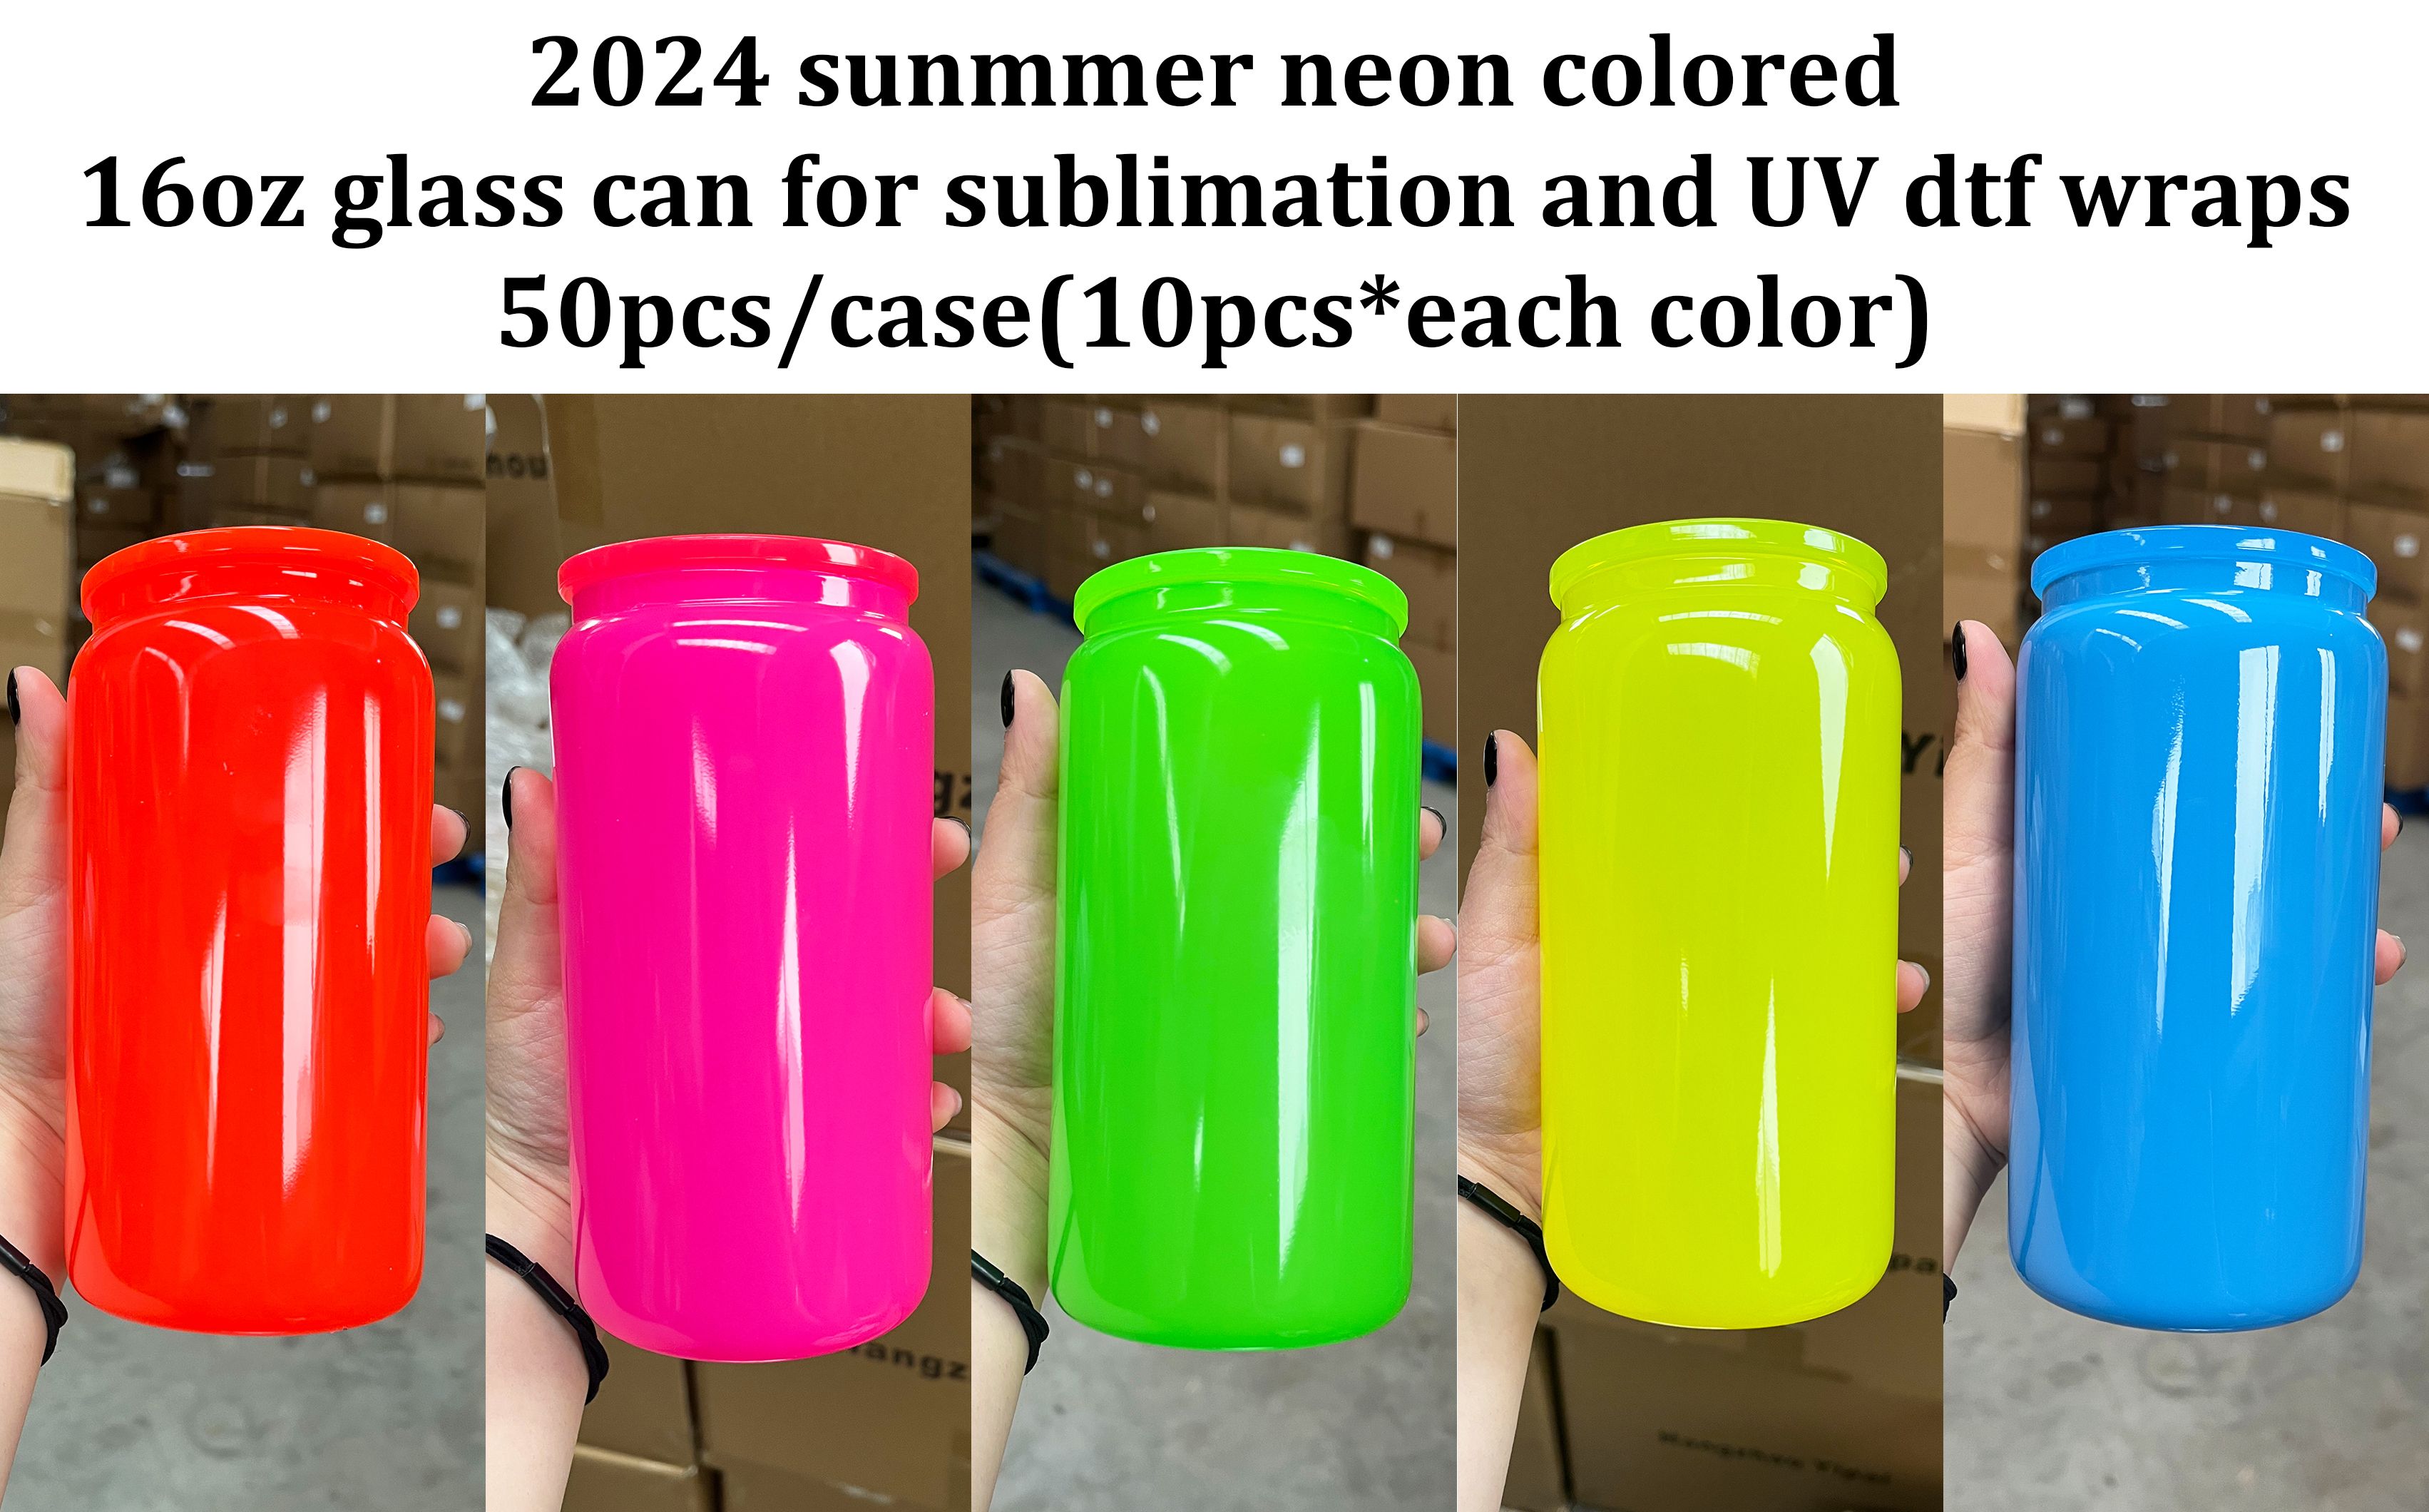 50pcs/case,each color 10